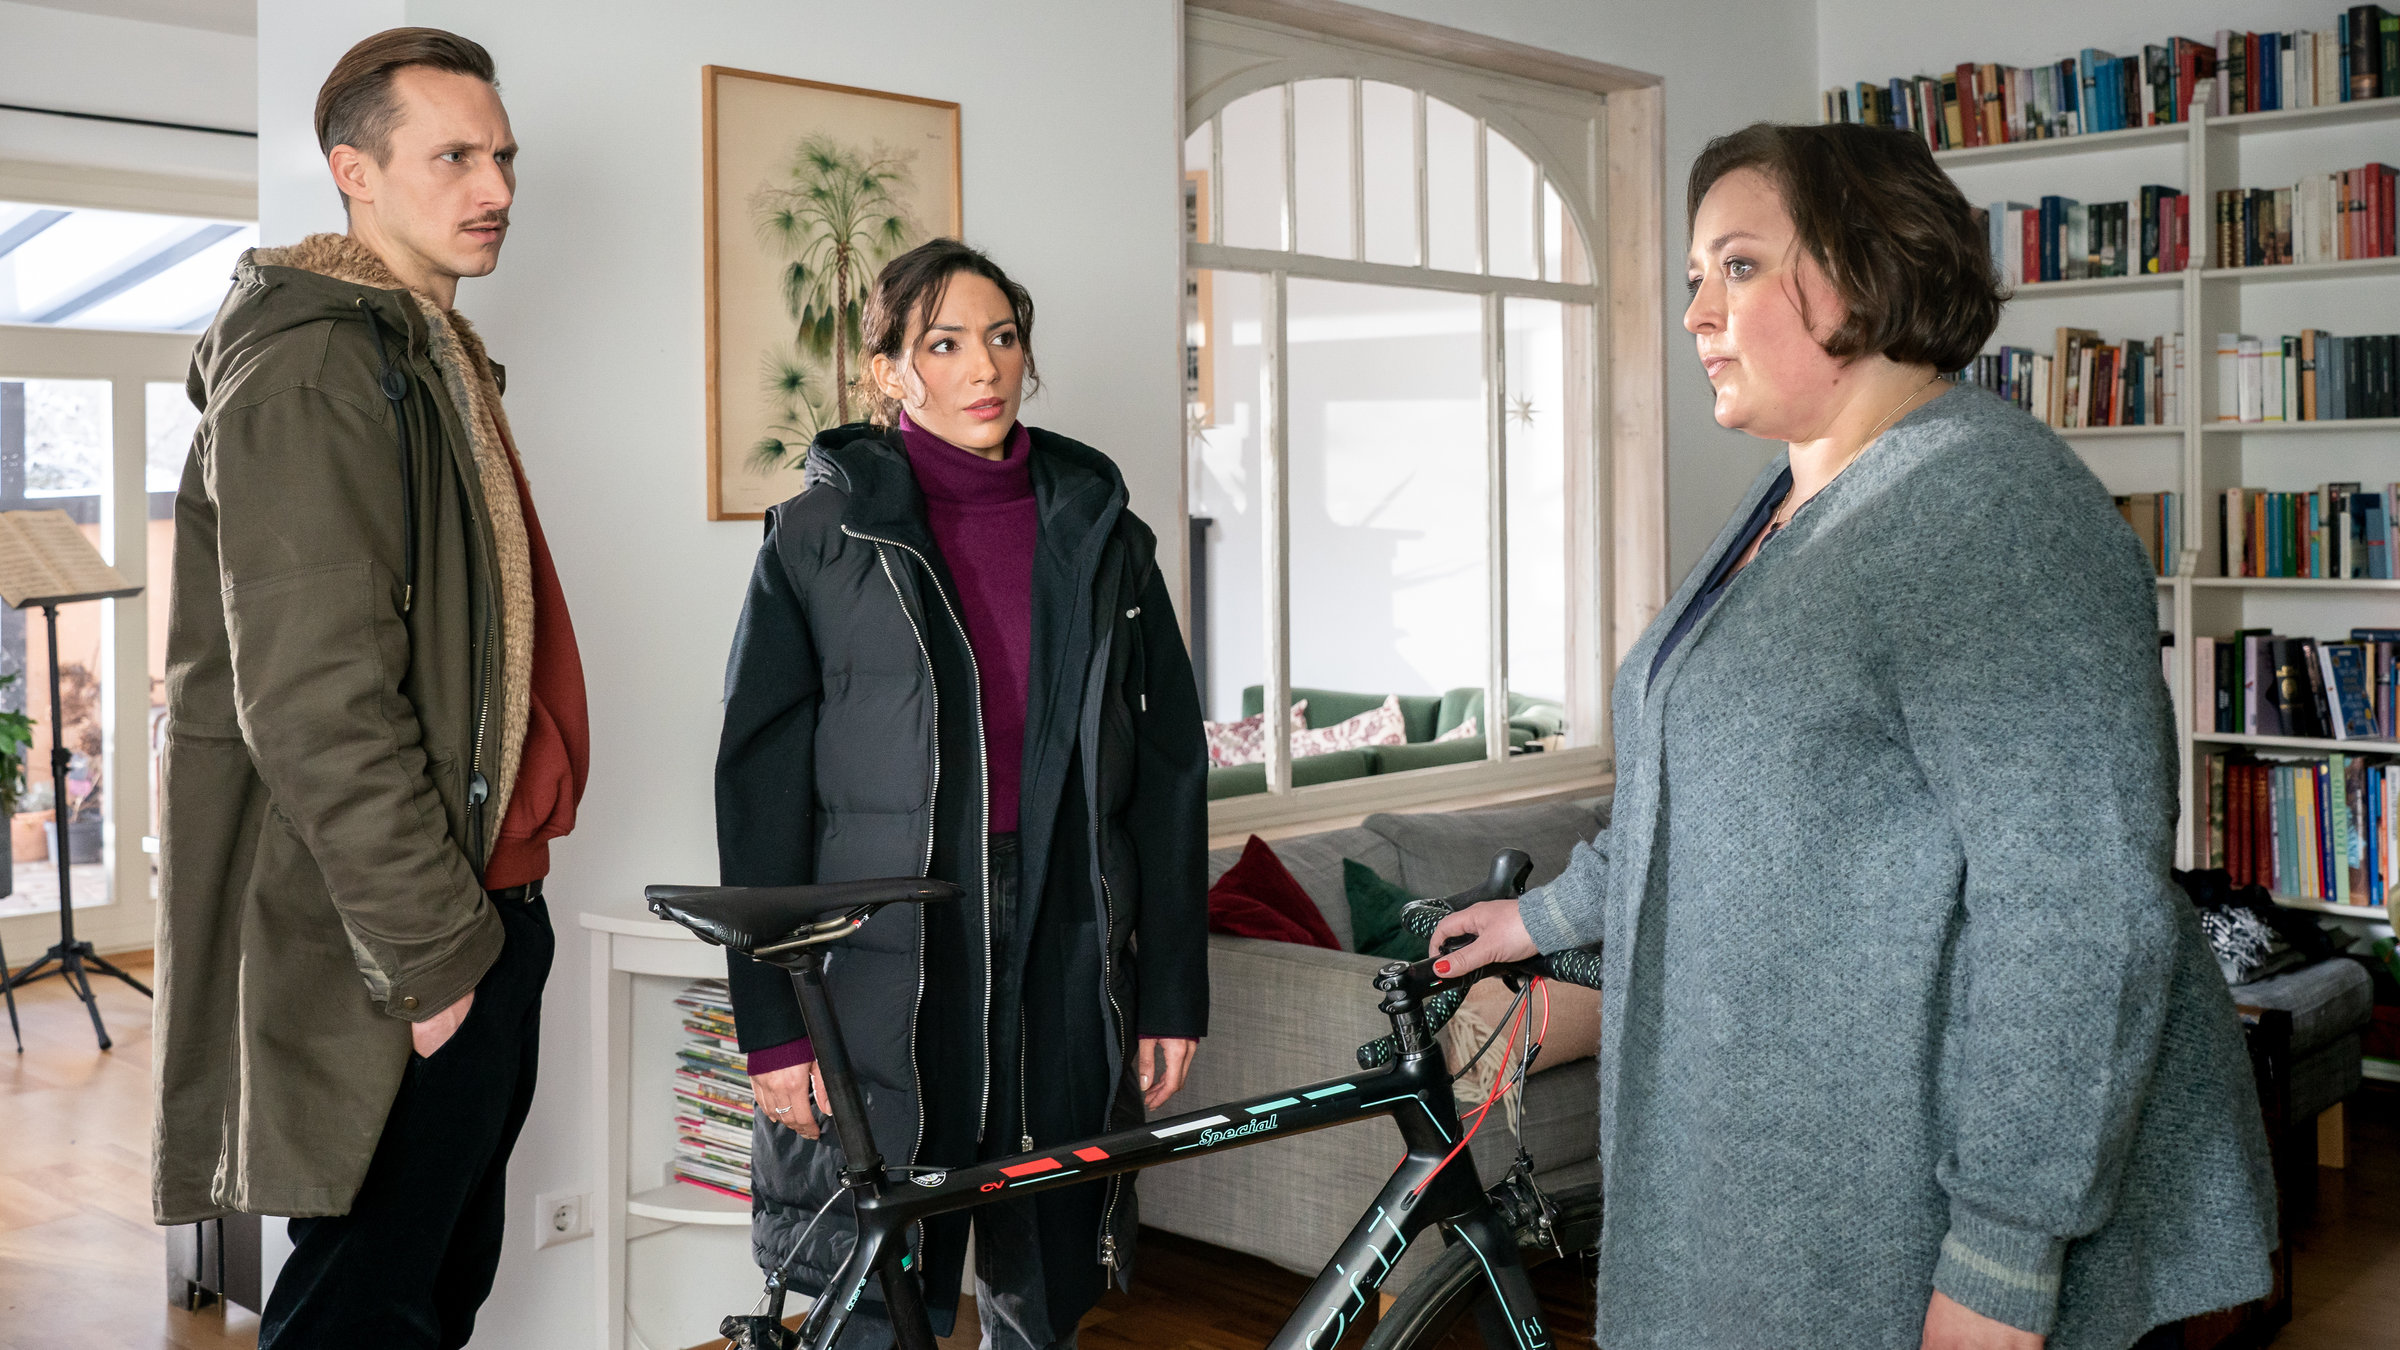 "SOKO Leipzig - Große Erwartungen": Moritz Brenner (Johannes Hendrik Langer) und Kim Nowak (Amy Mußul) stehen mit Selina Böhmer (Tina Pfurr) in ihrem Wohnzimmer um Marcs Fahrrad herum und unterhalten sich.